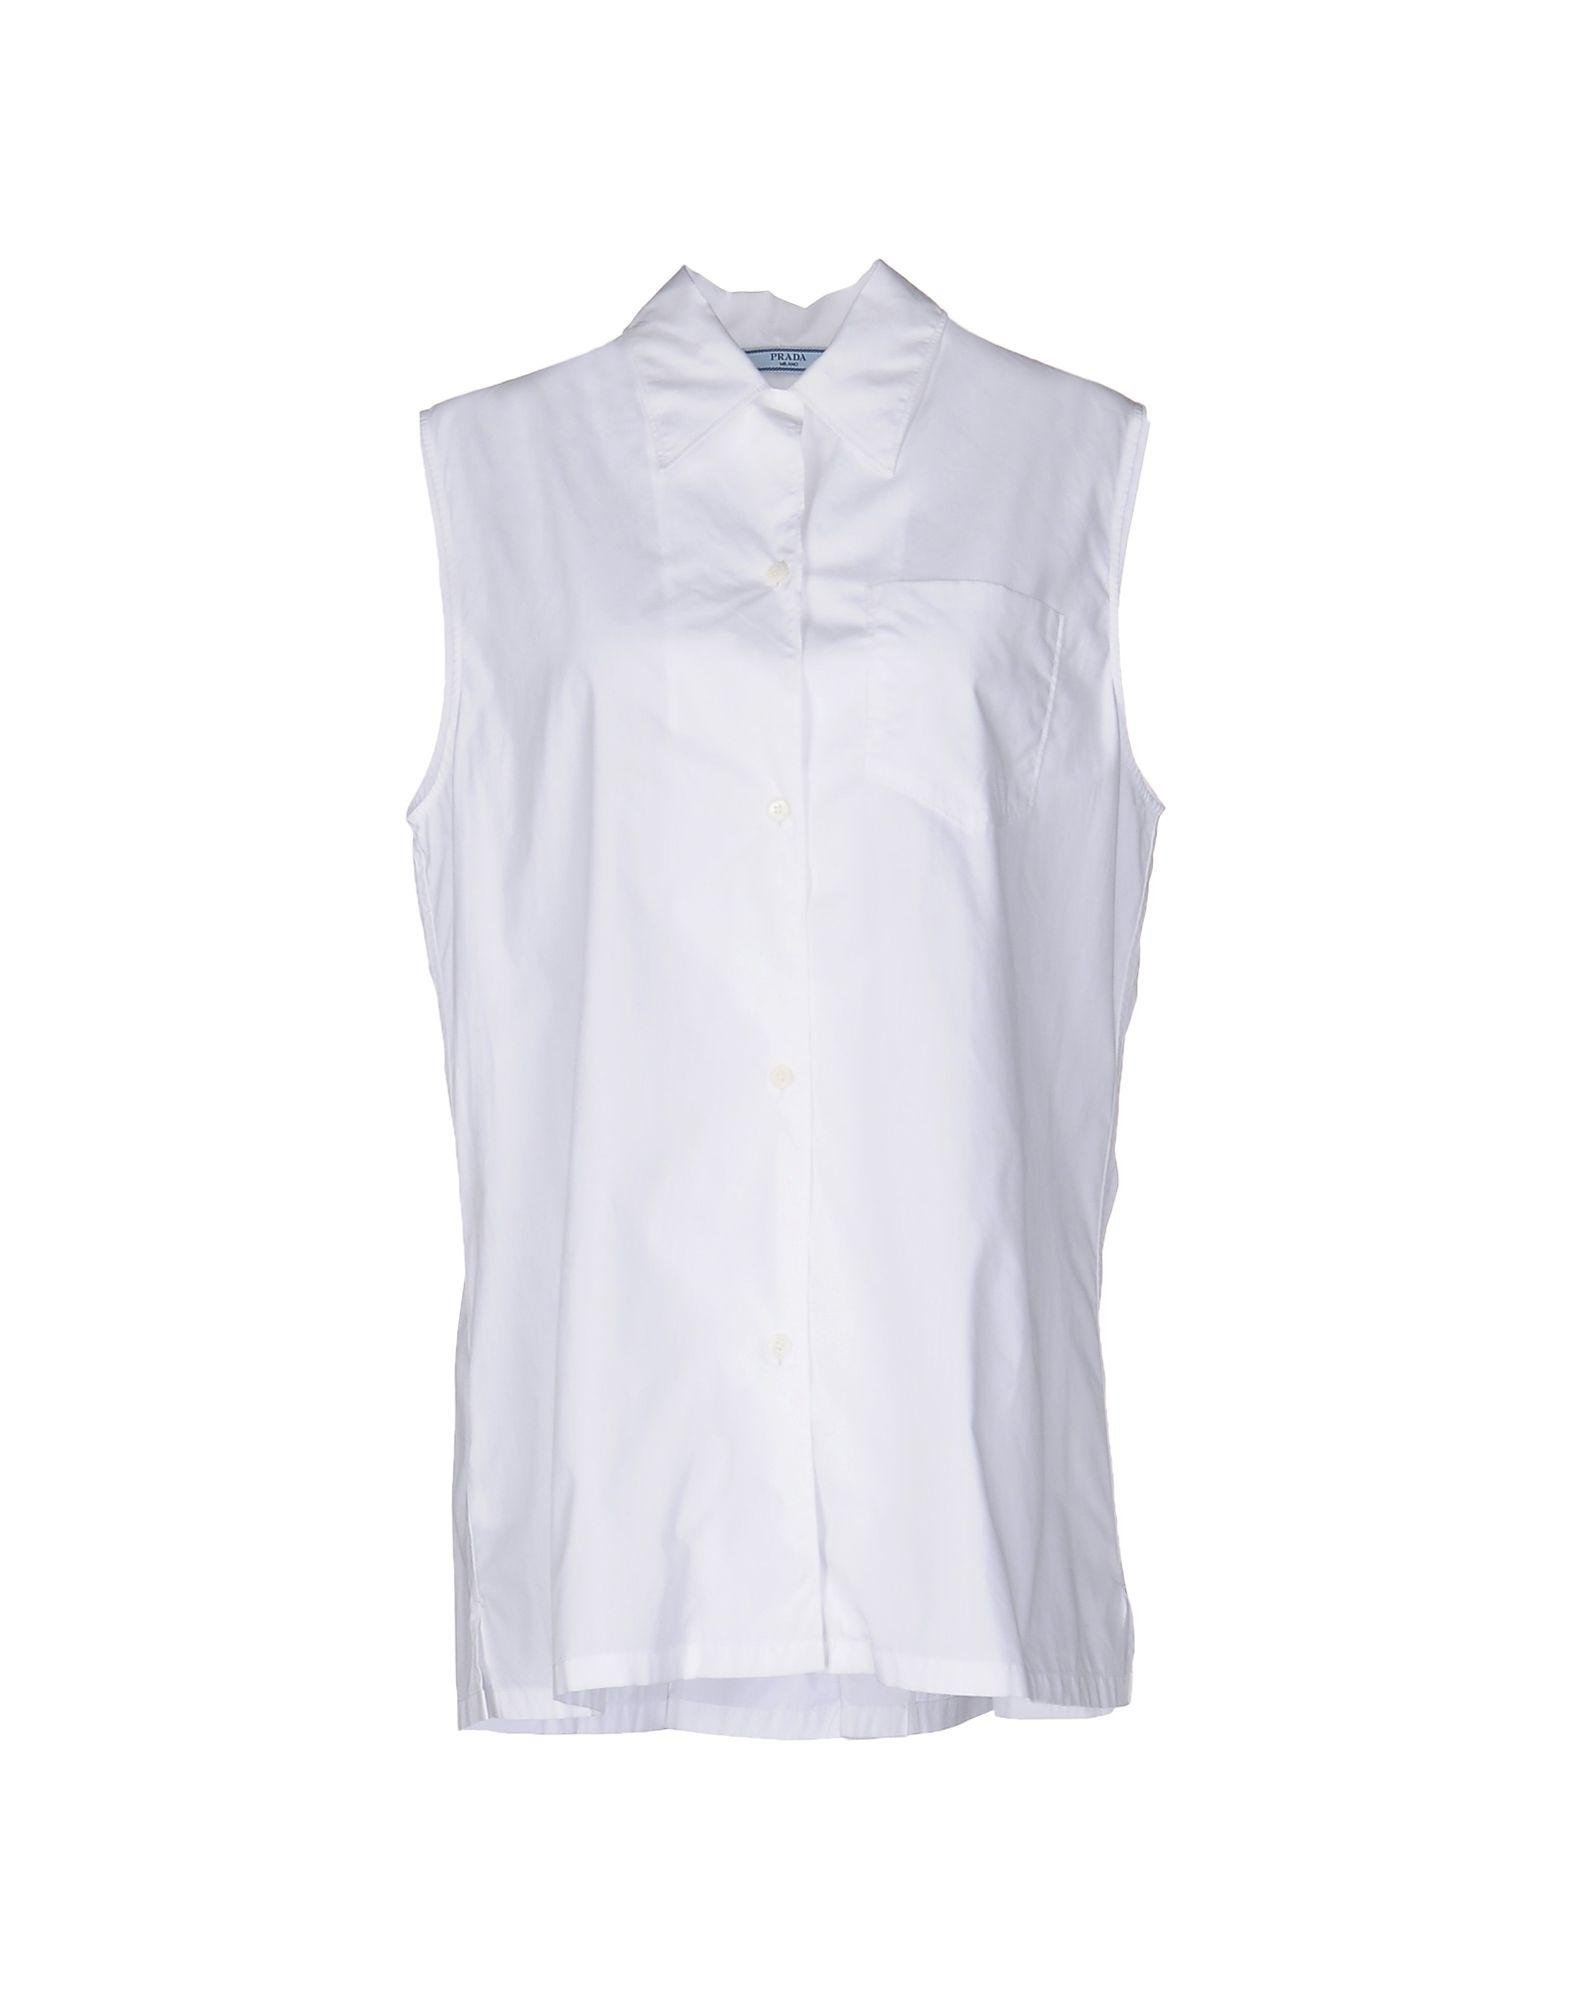 Lyst - Prada Shirt in White